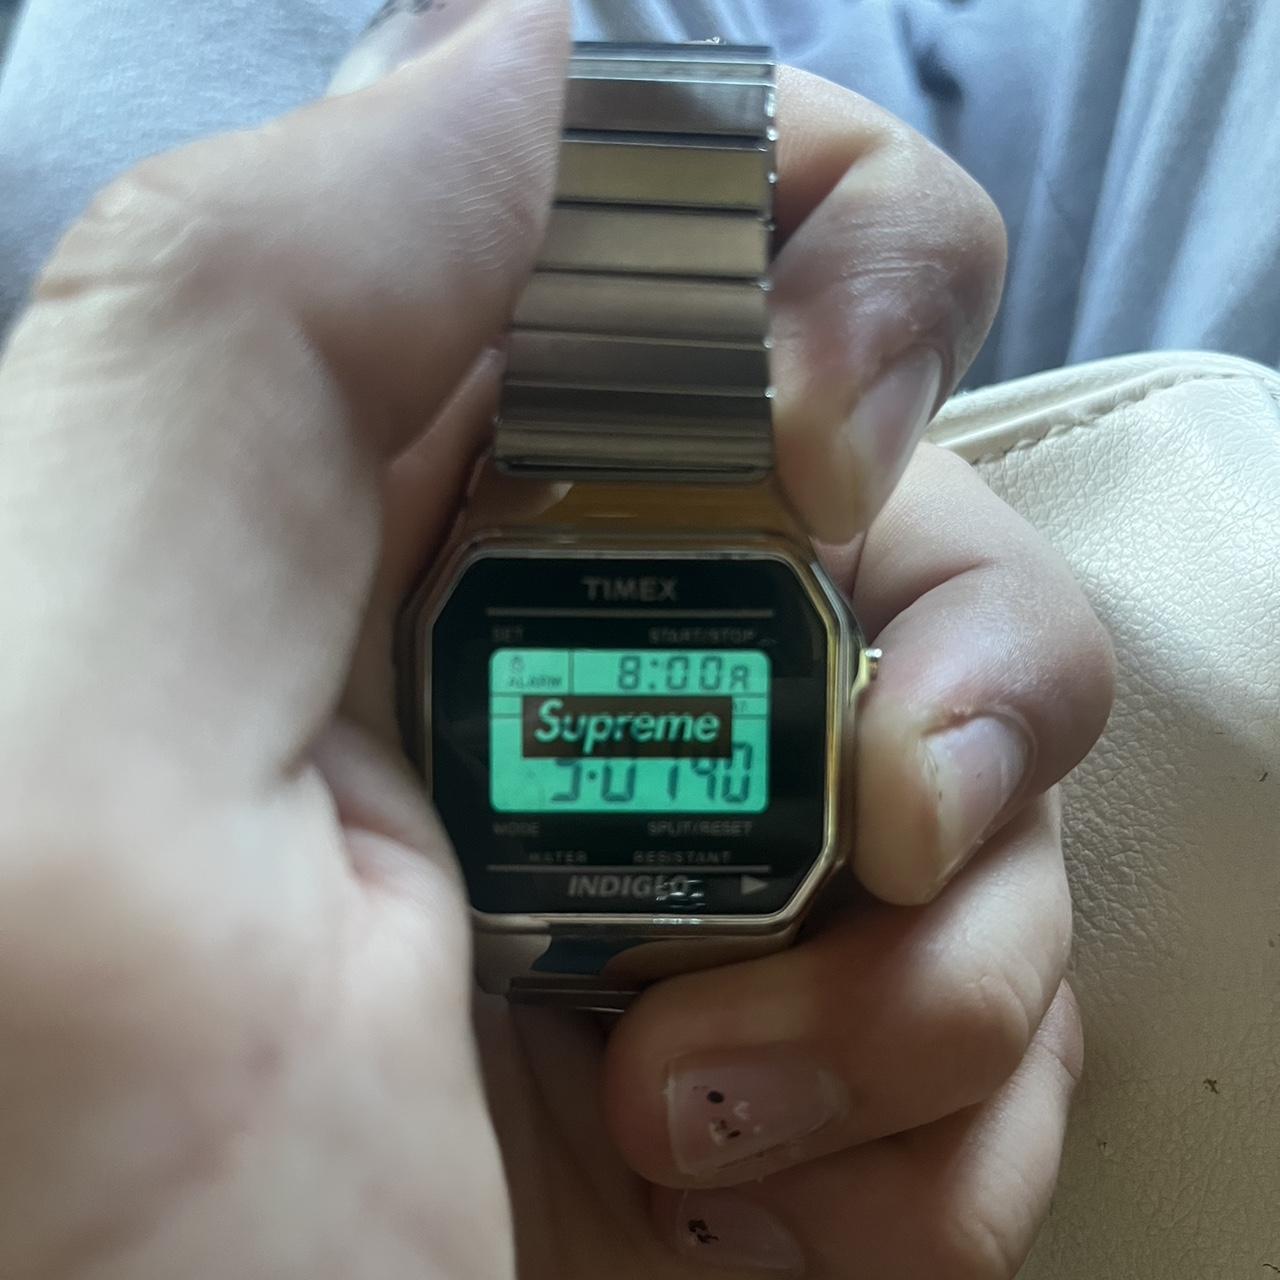 Supreme 19aw Timex Digital Watch Silver digital